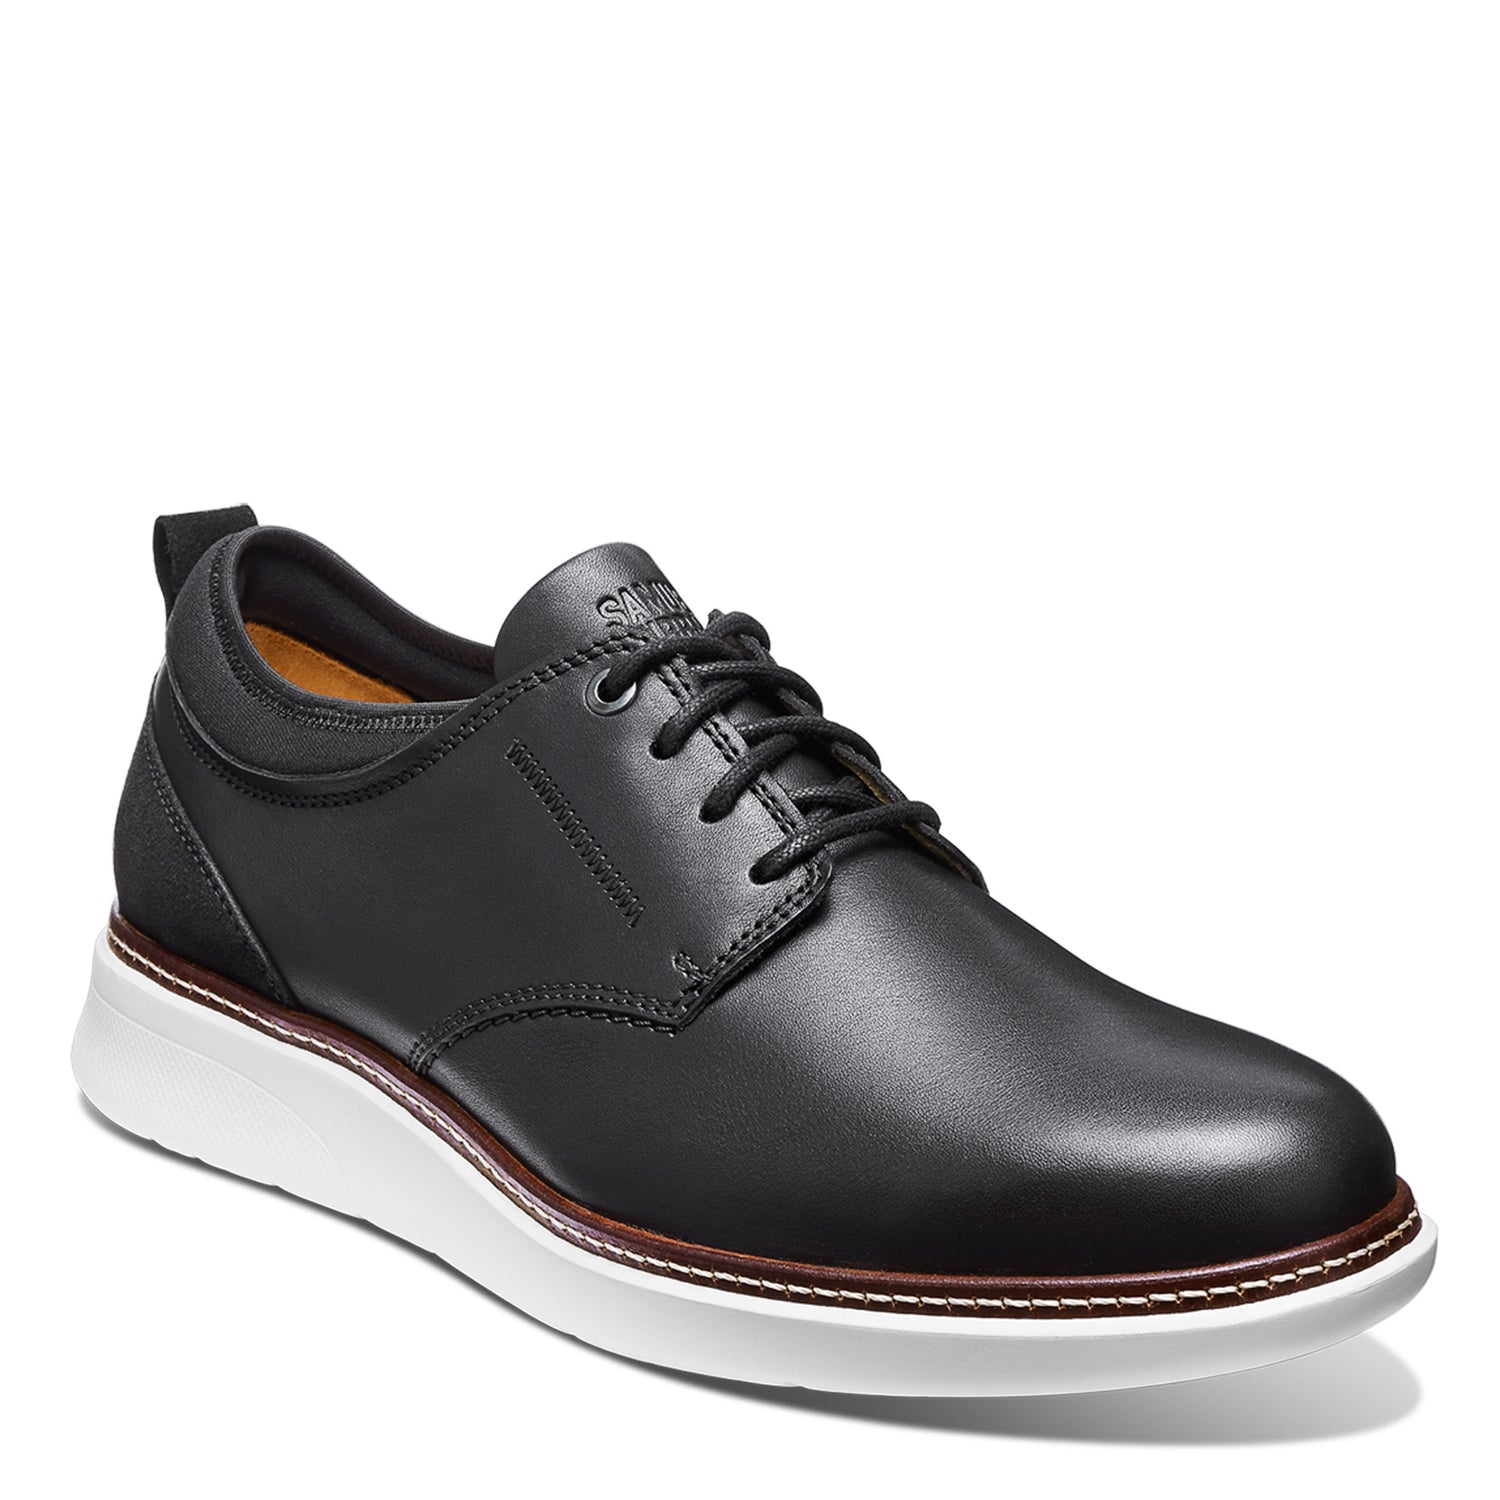 Peltz Shoes  Men's Samuel Hubbard Rafael Lace-Up Black Leather M2165-048